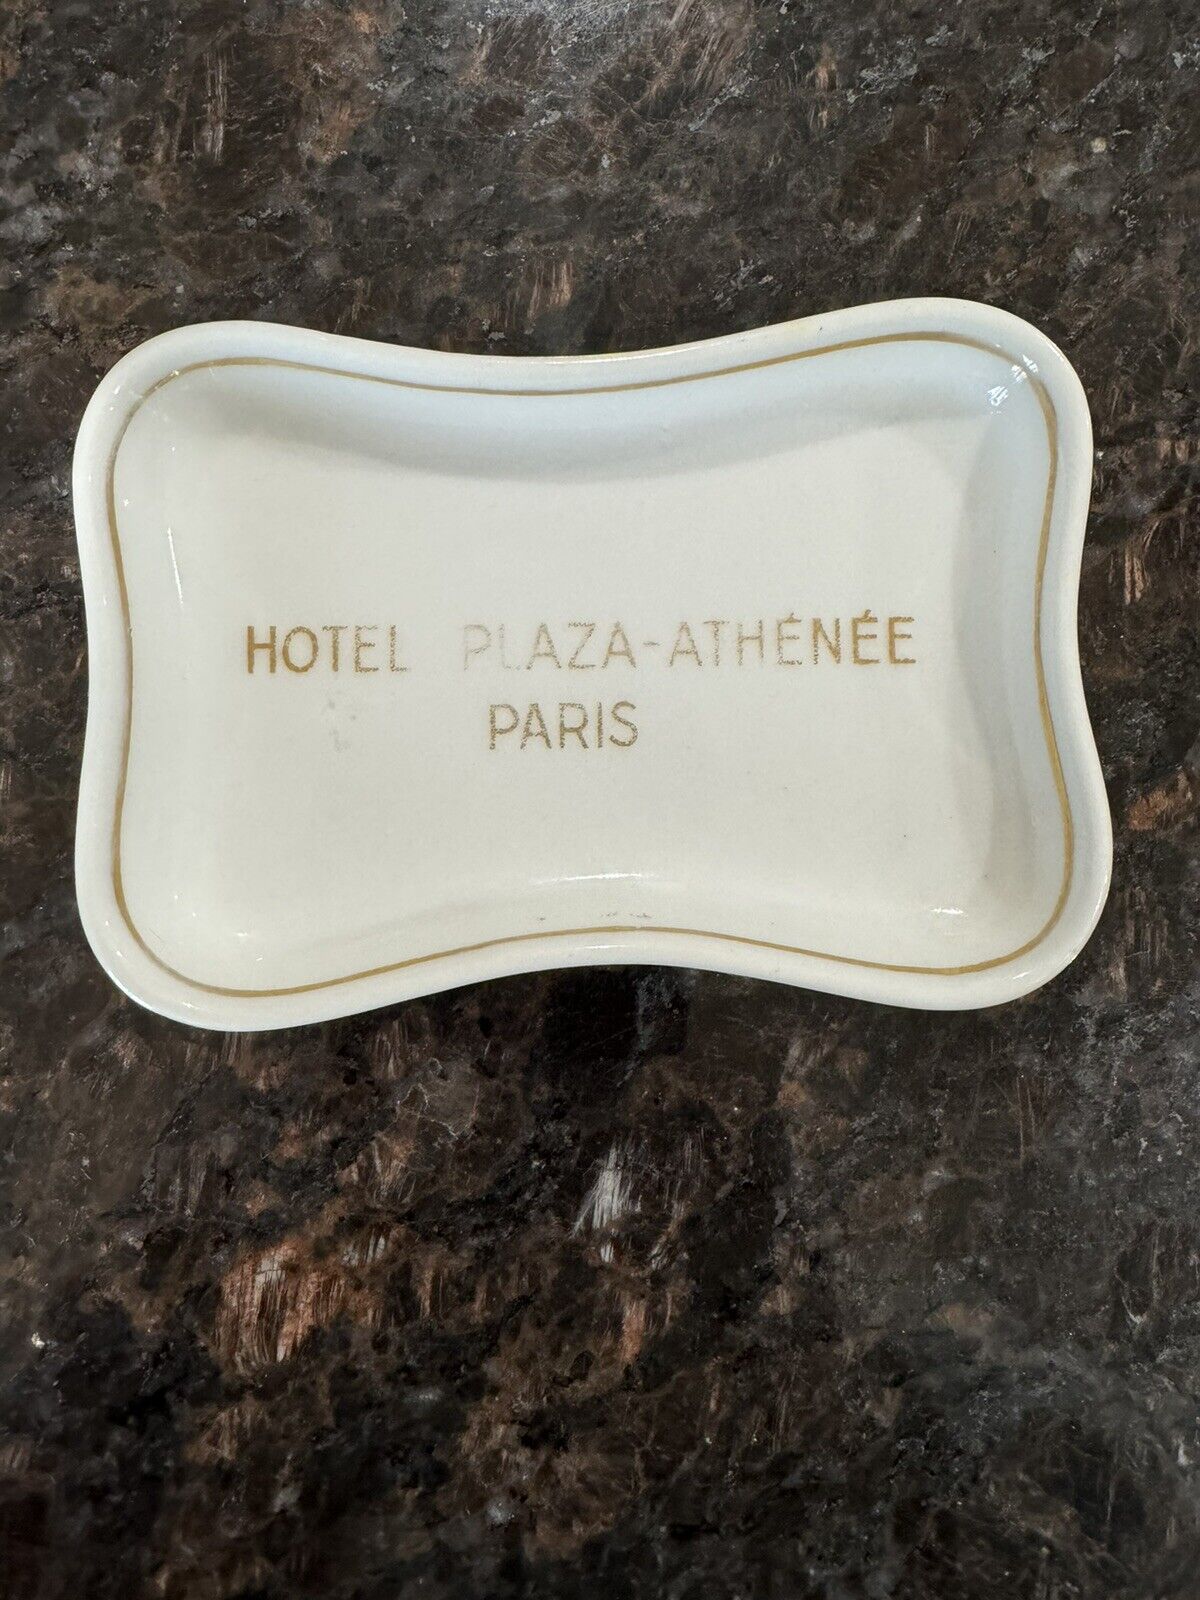 Hotel Plaza Athenee Paris Porcelain Ashtray Dish 4” Vintage